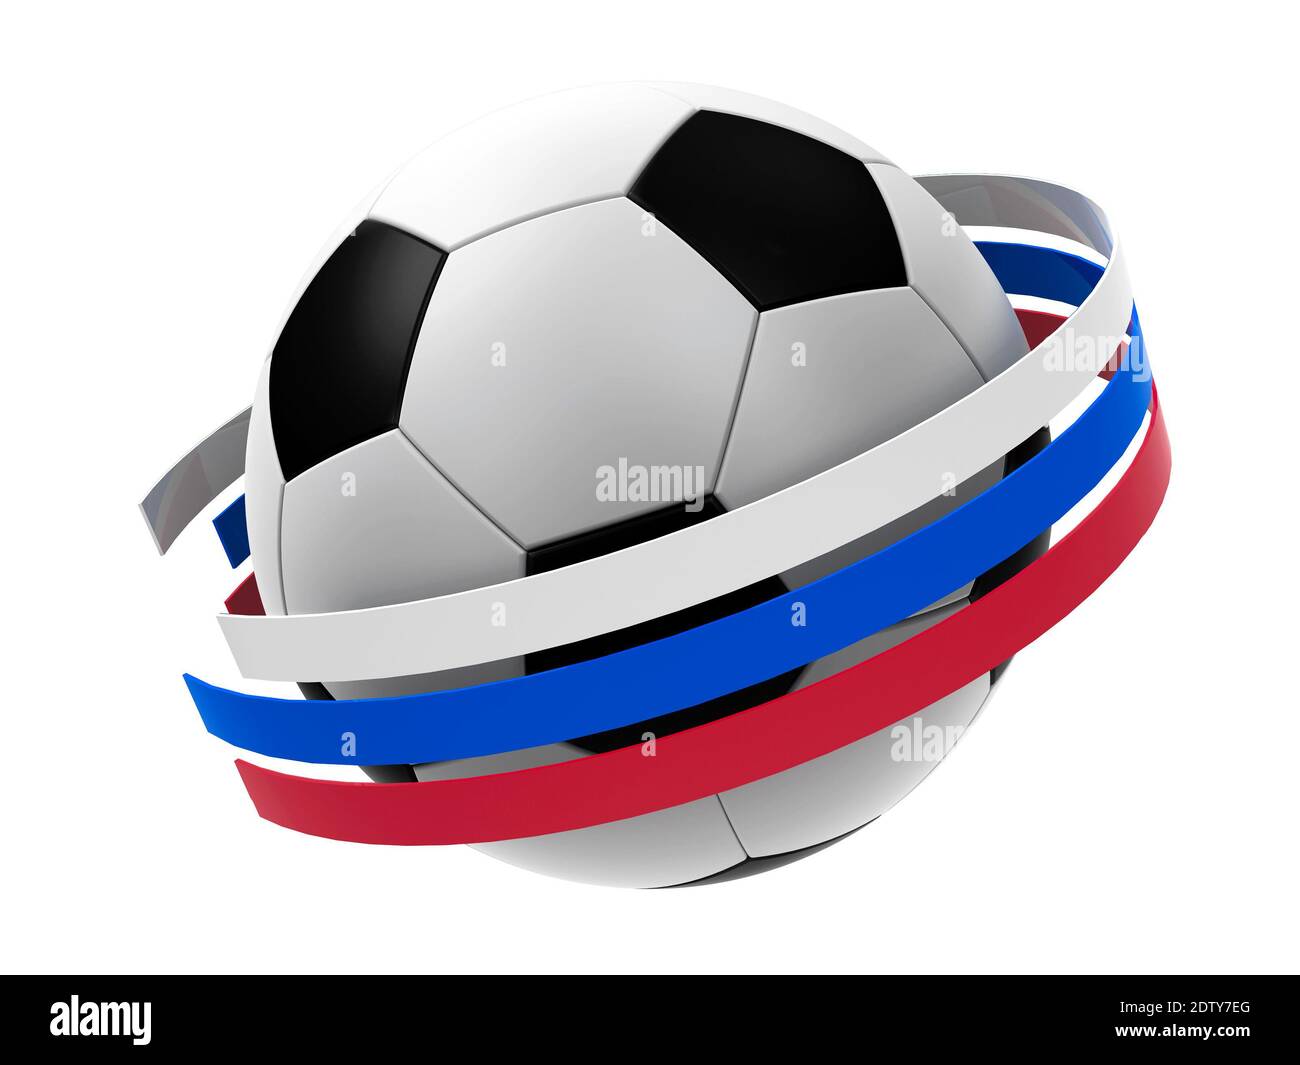 Le football avec des rayures sous la forme d'un drapeau russe isolé sur fond blanc, représente la coupe du monde 2018 - championnat de football de Russie, en trois dimensions Banque D'Images